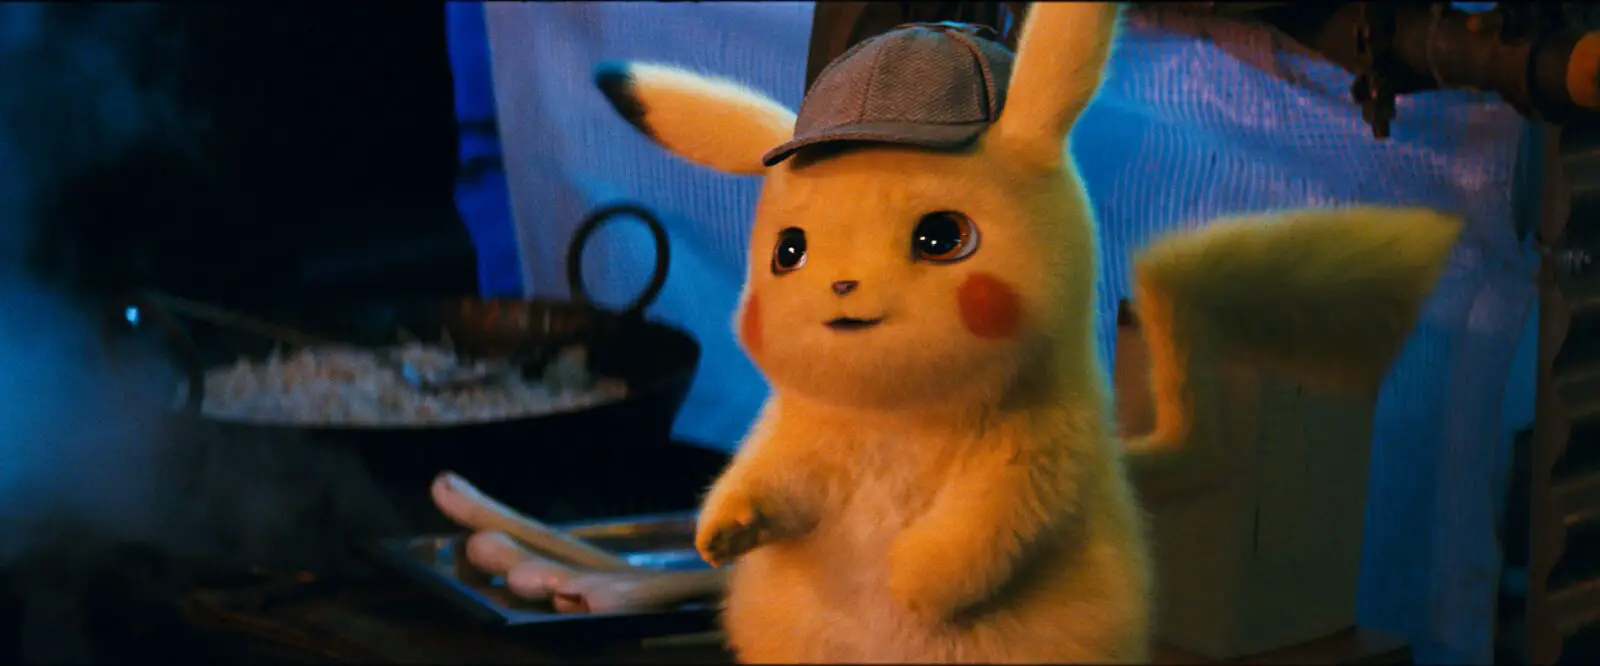 Detetive Pikachu imagem do filme